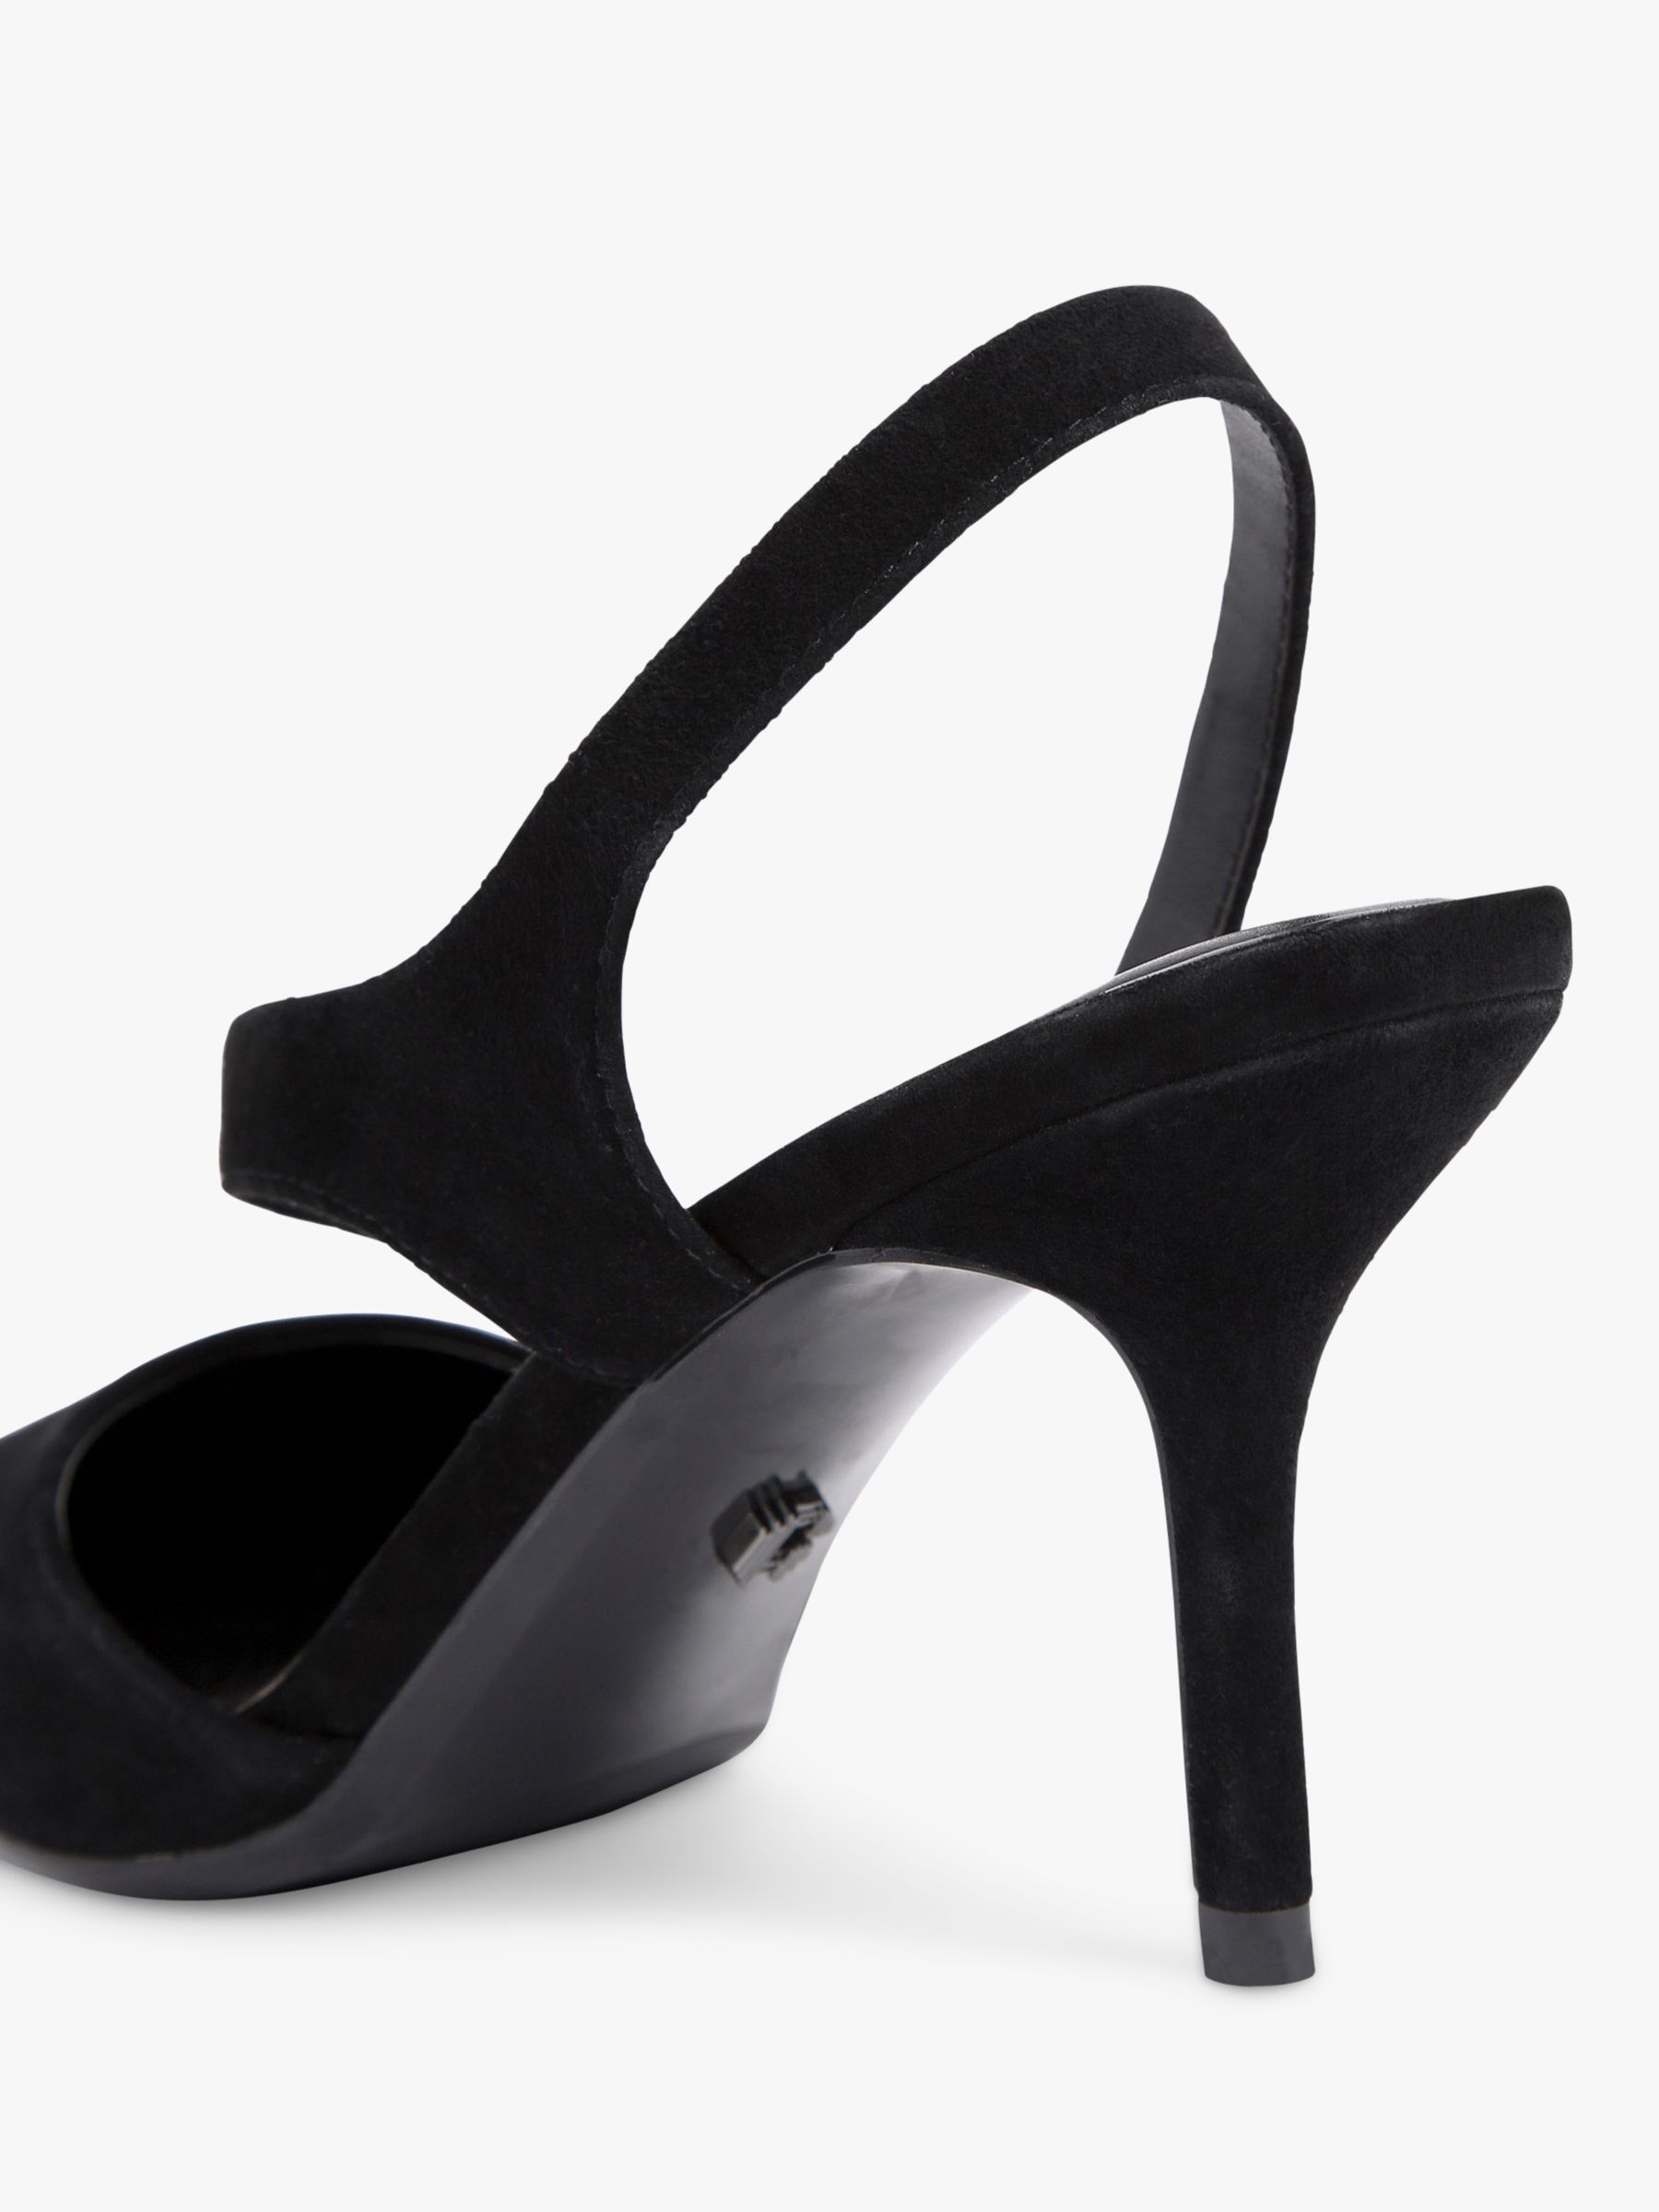 Carvela Symmetry Suede Court Shoes, Black, 3